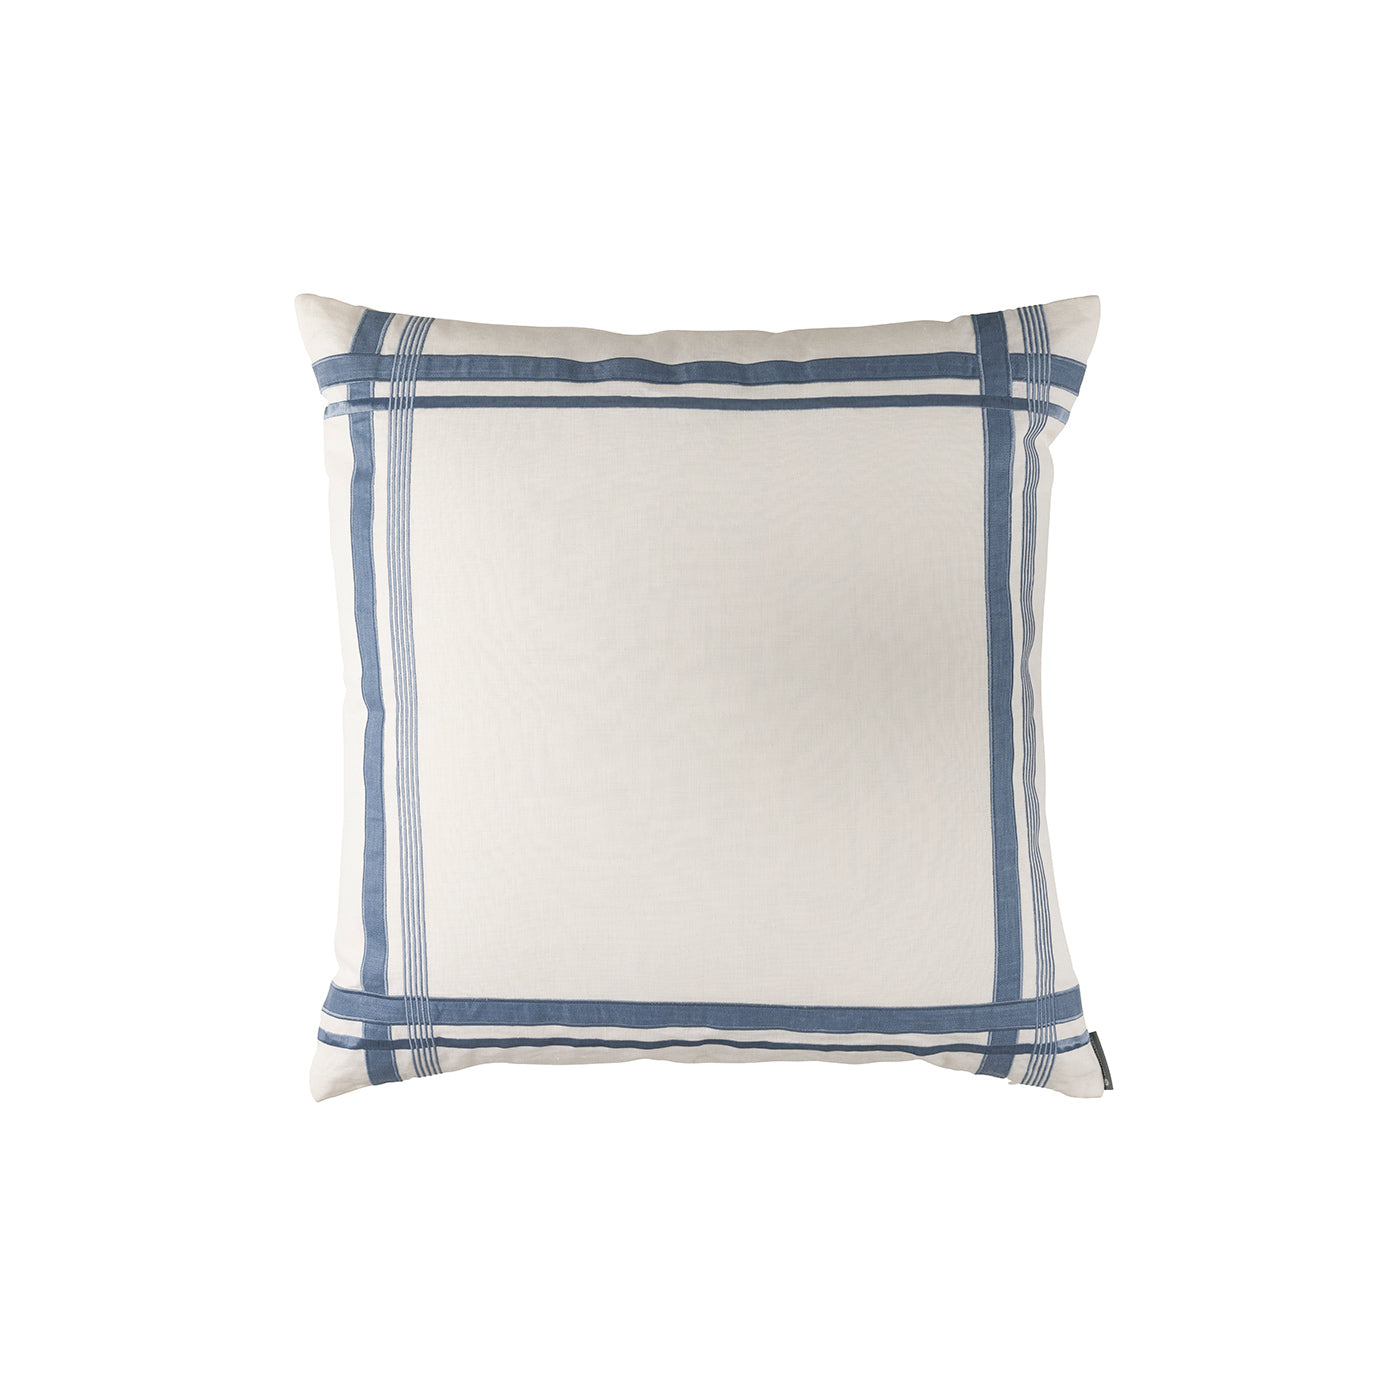 Oliver Euro Pillow White Seaglass 26X26